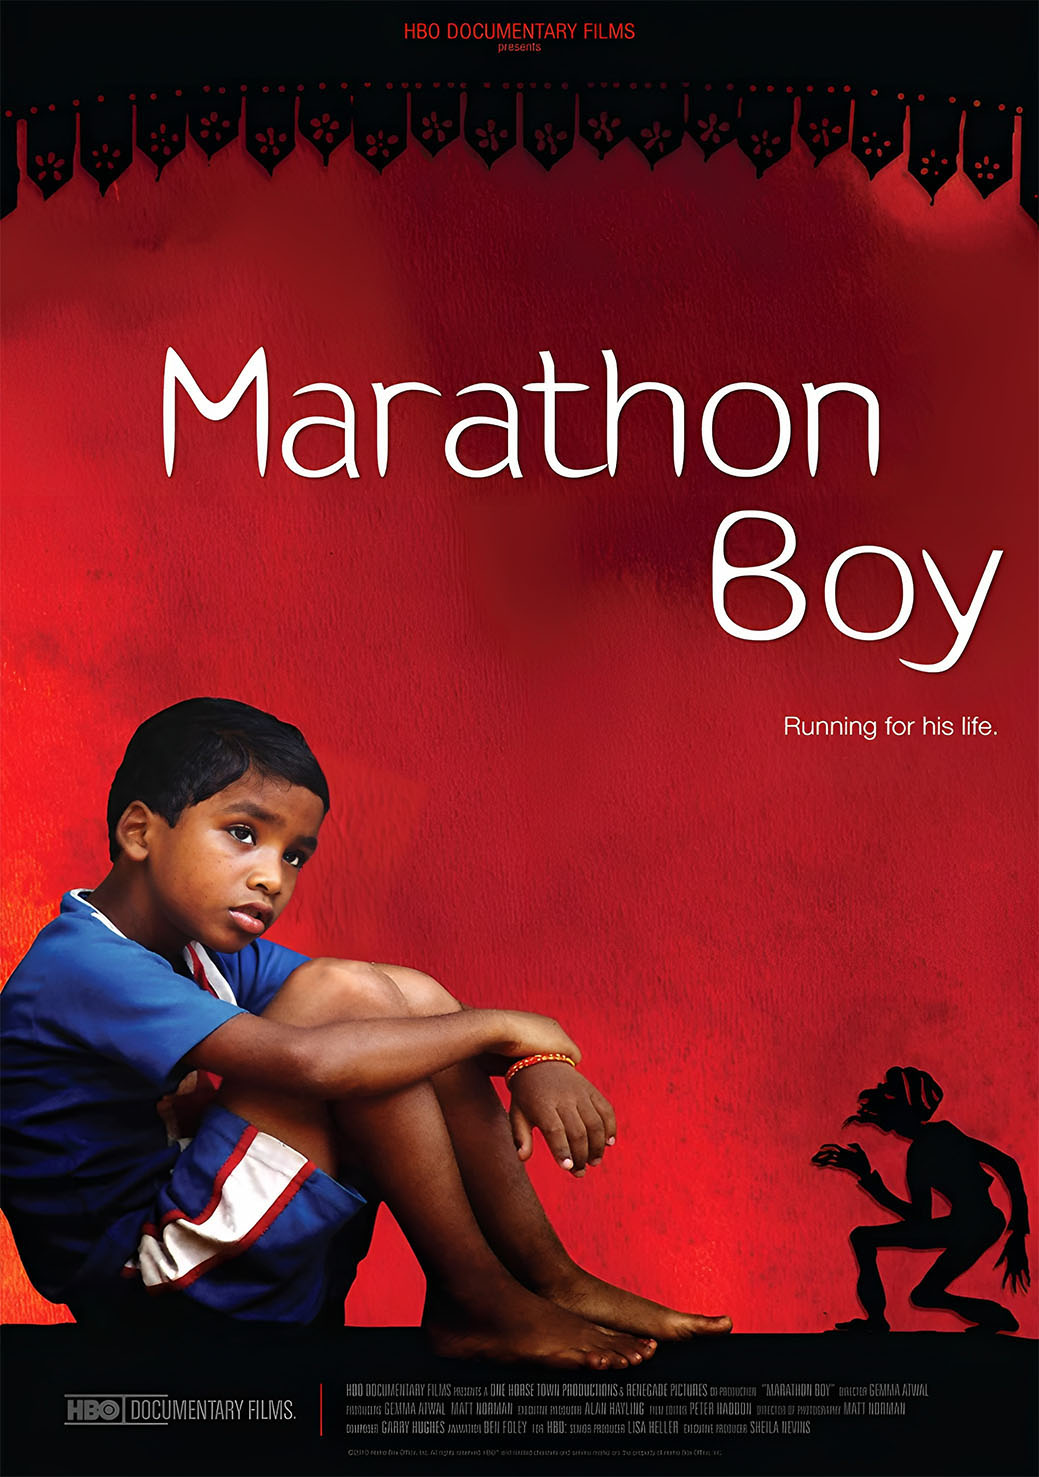 Marathon Boy